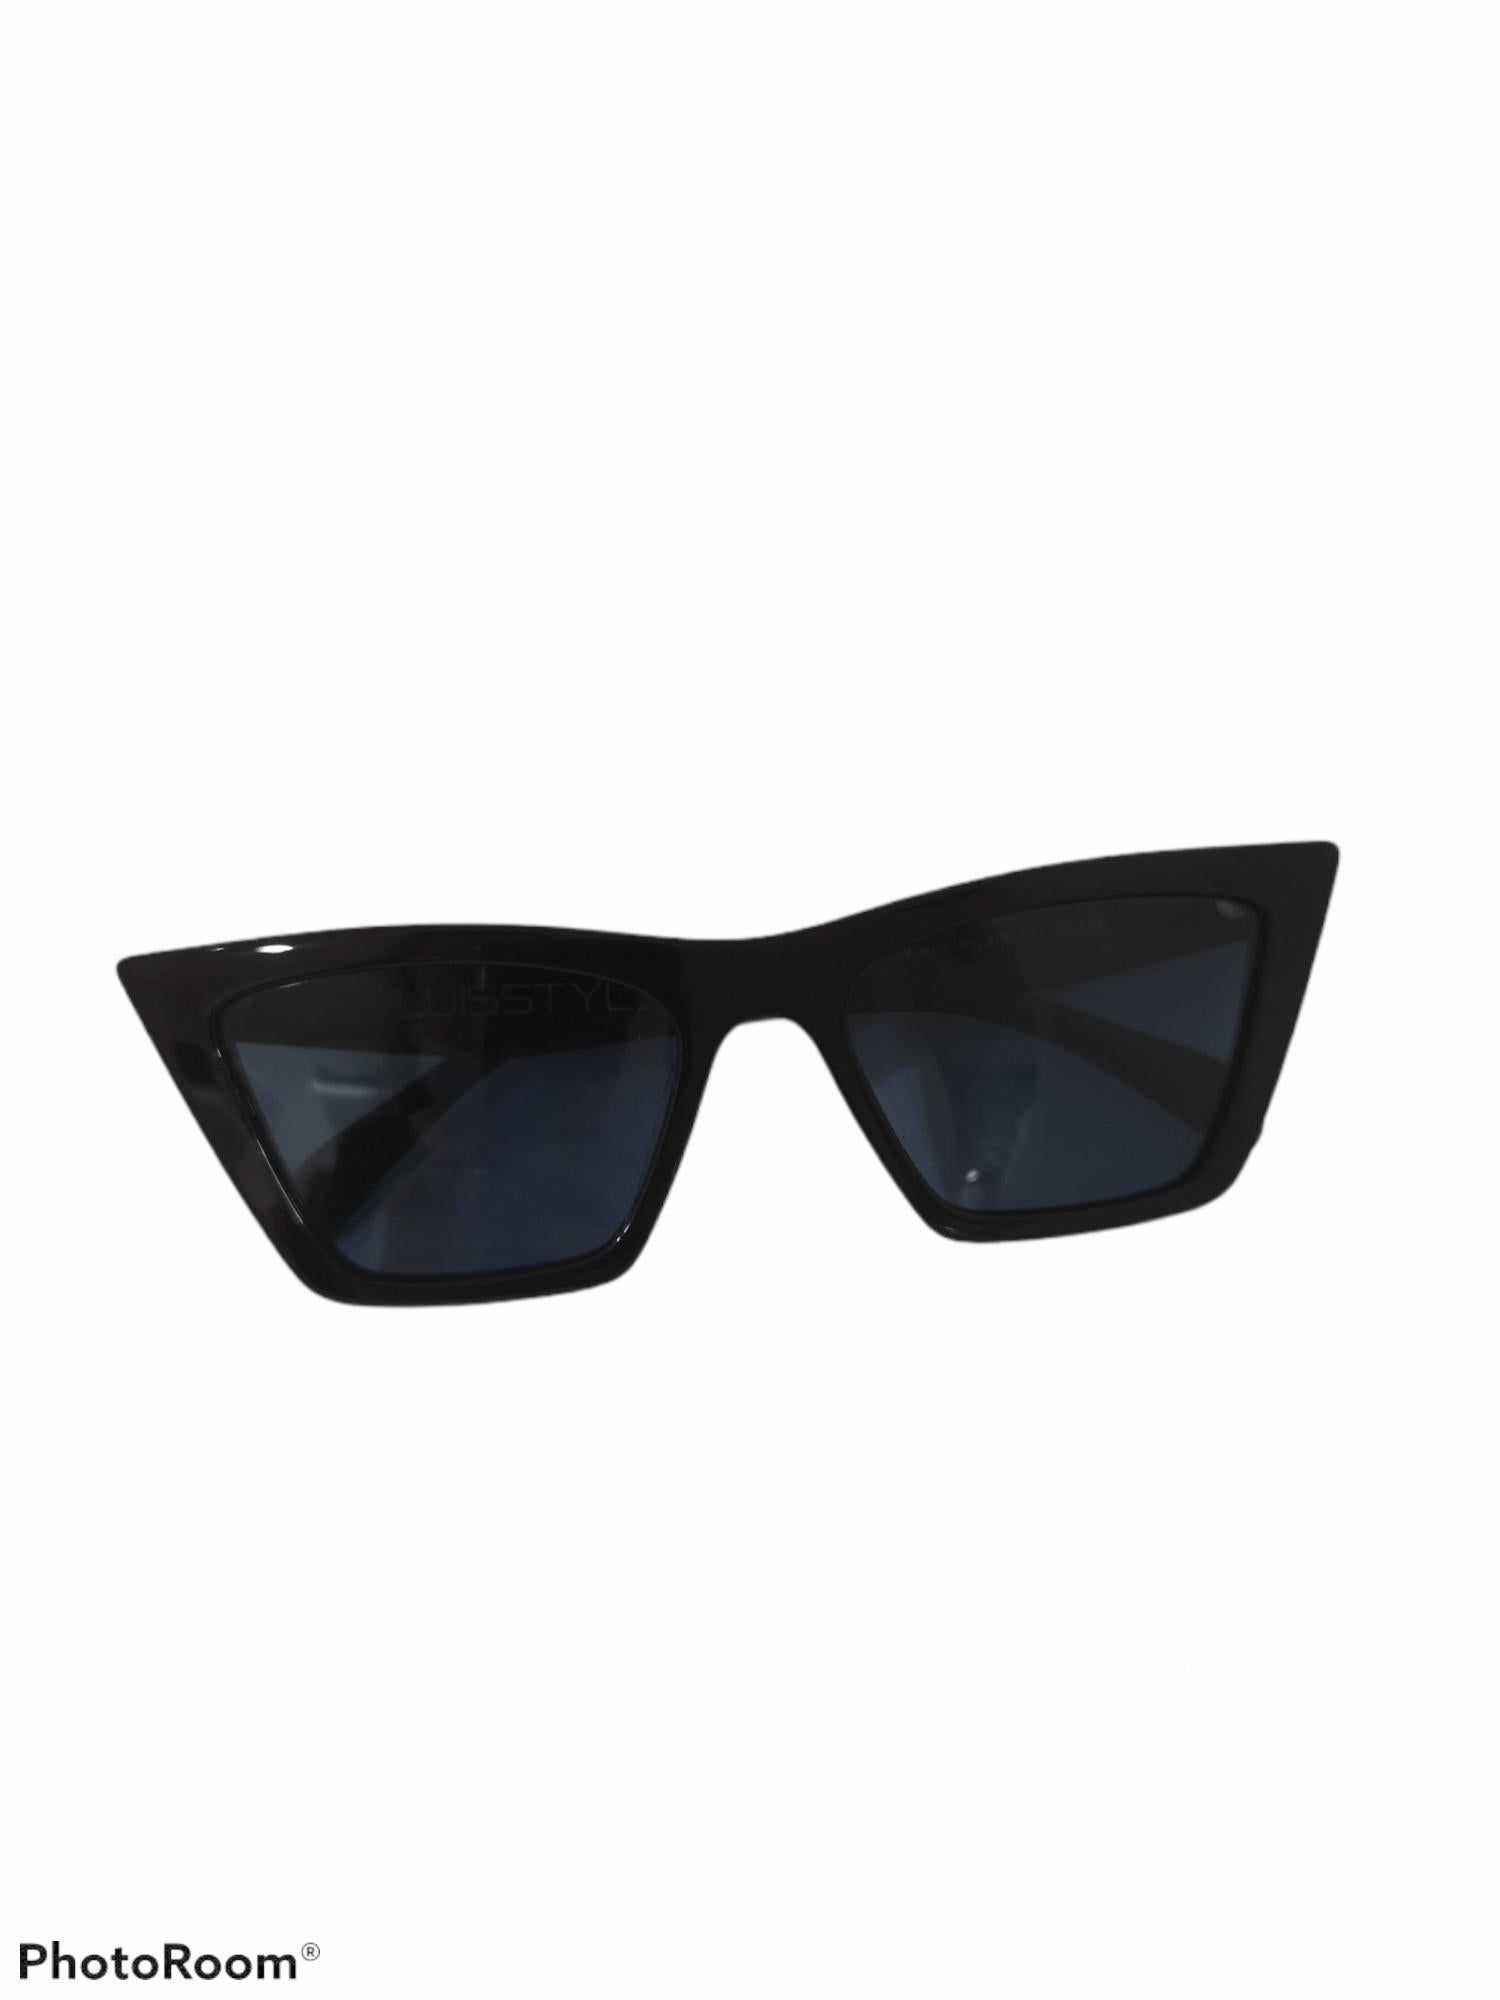 Black light blue lens sunglasses NWOT 1